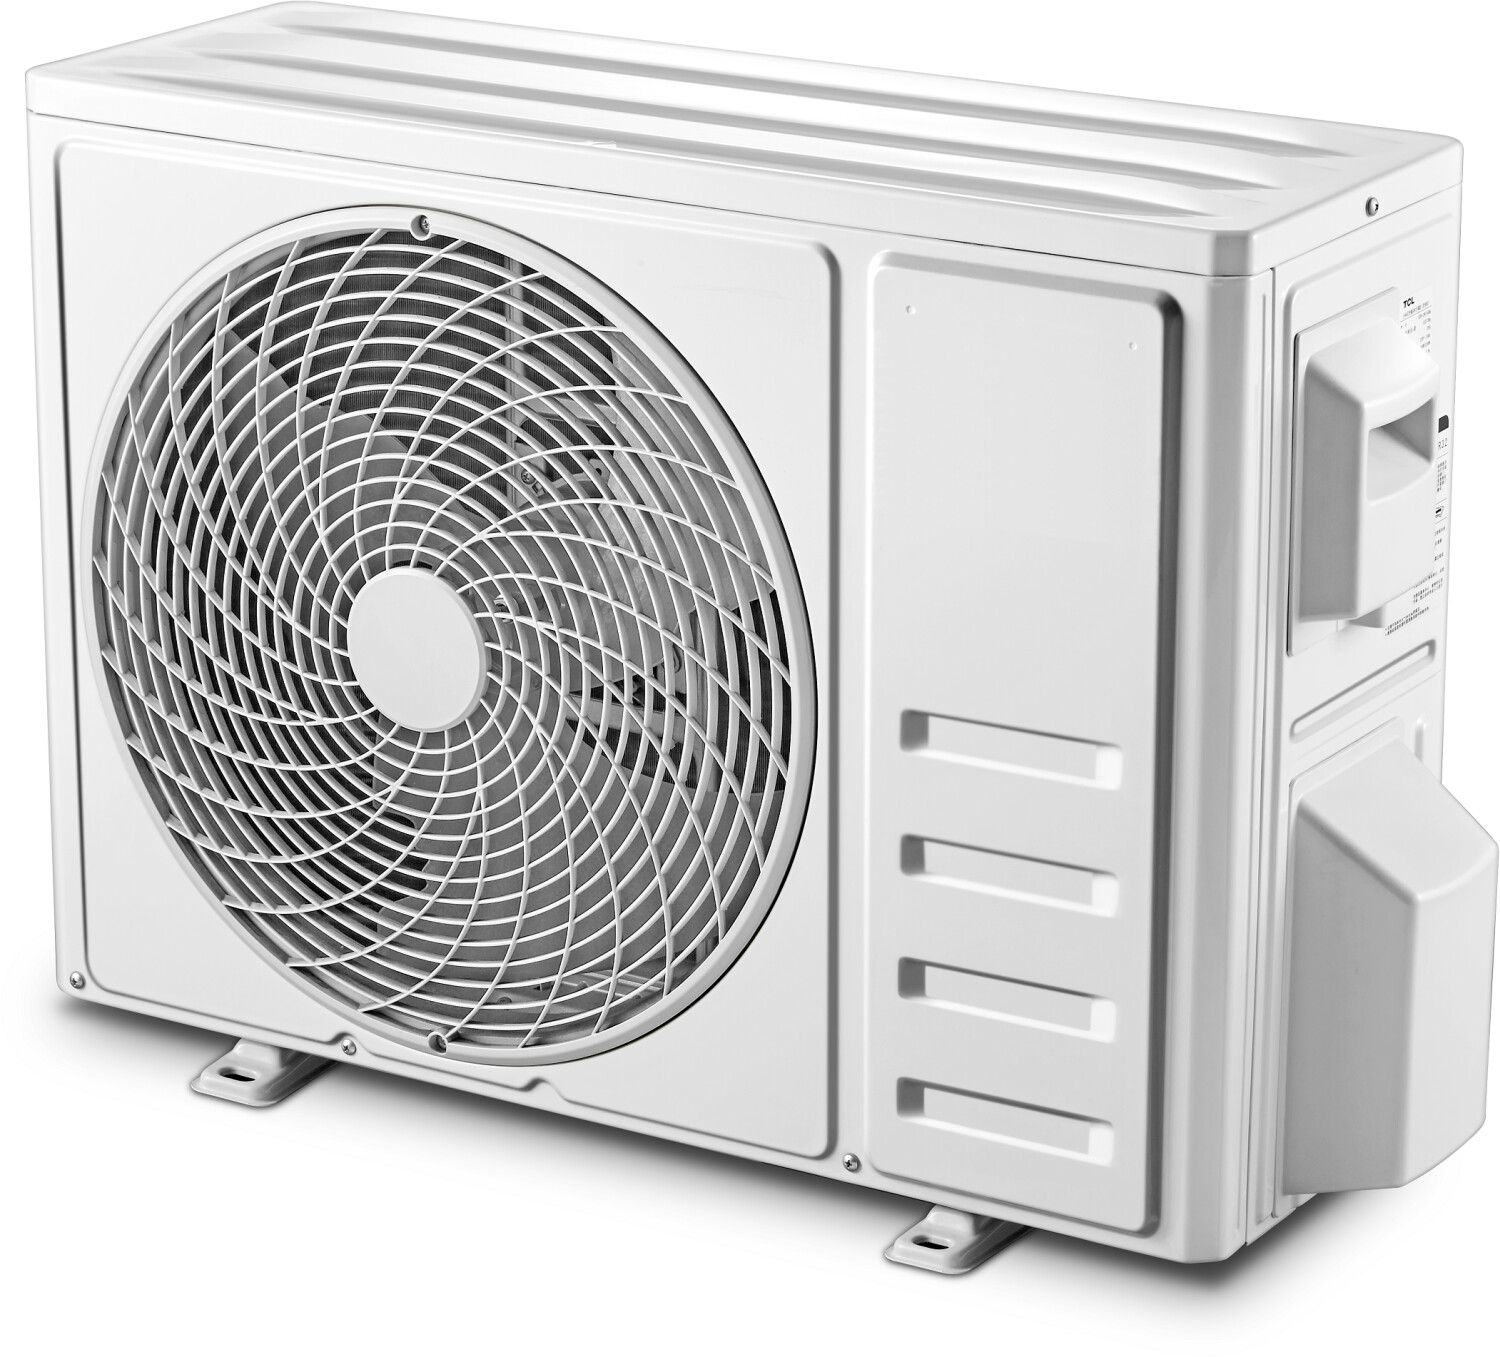 Split-Klimaanlage 12.000 BTU TCL: 3,4 kW, 4-in-1-Gerät, Kühlen und Heizen